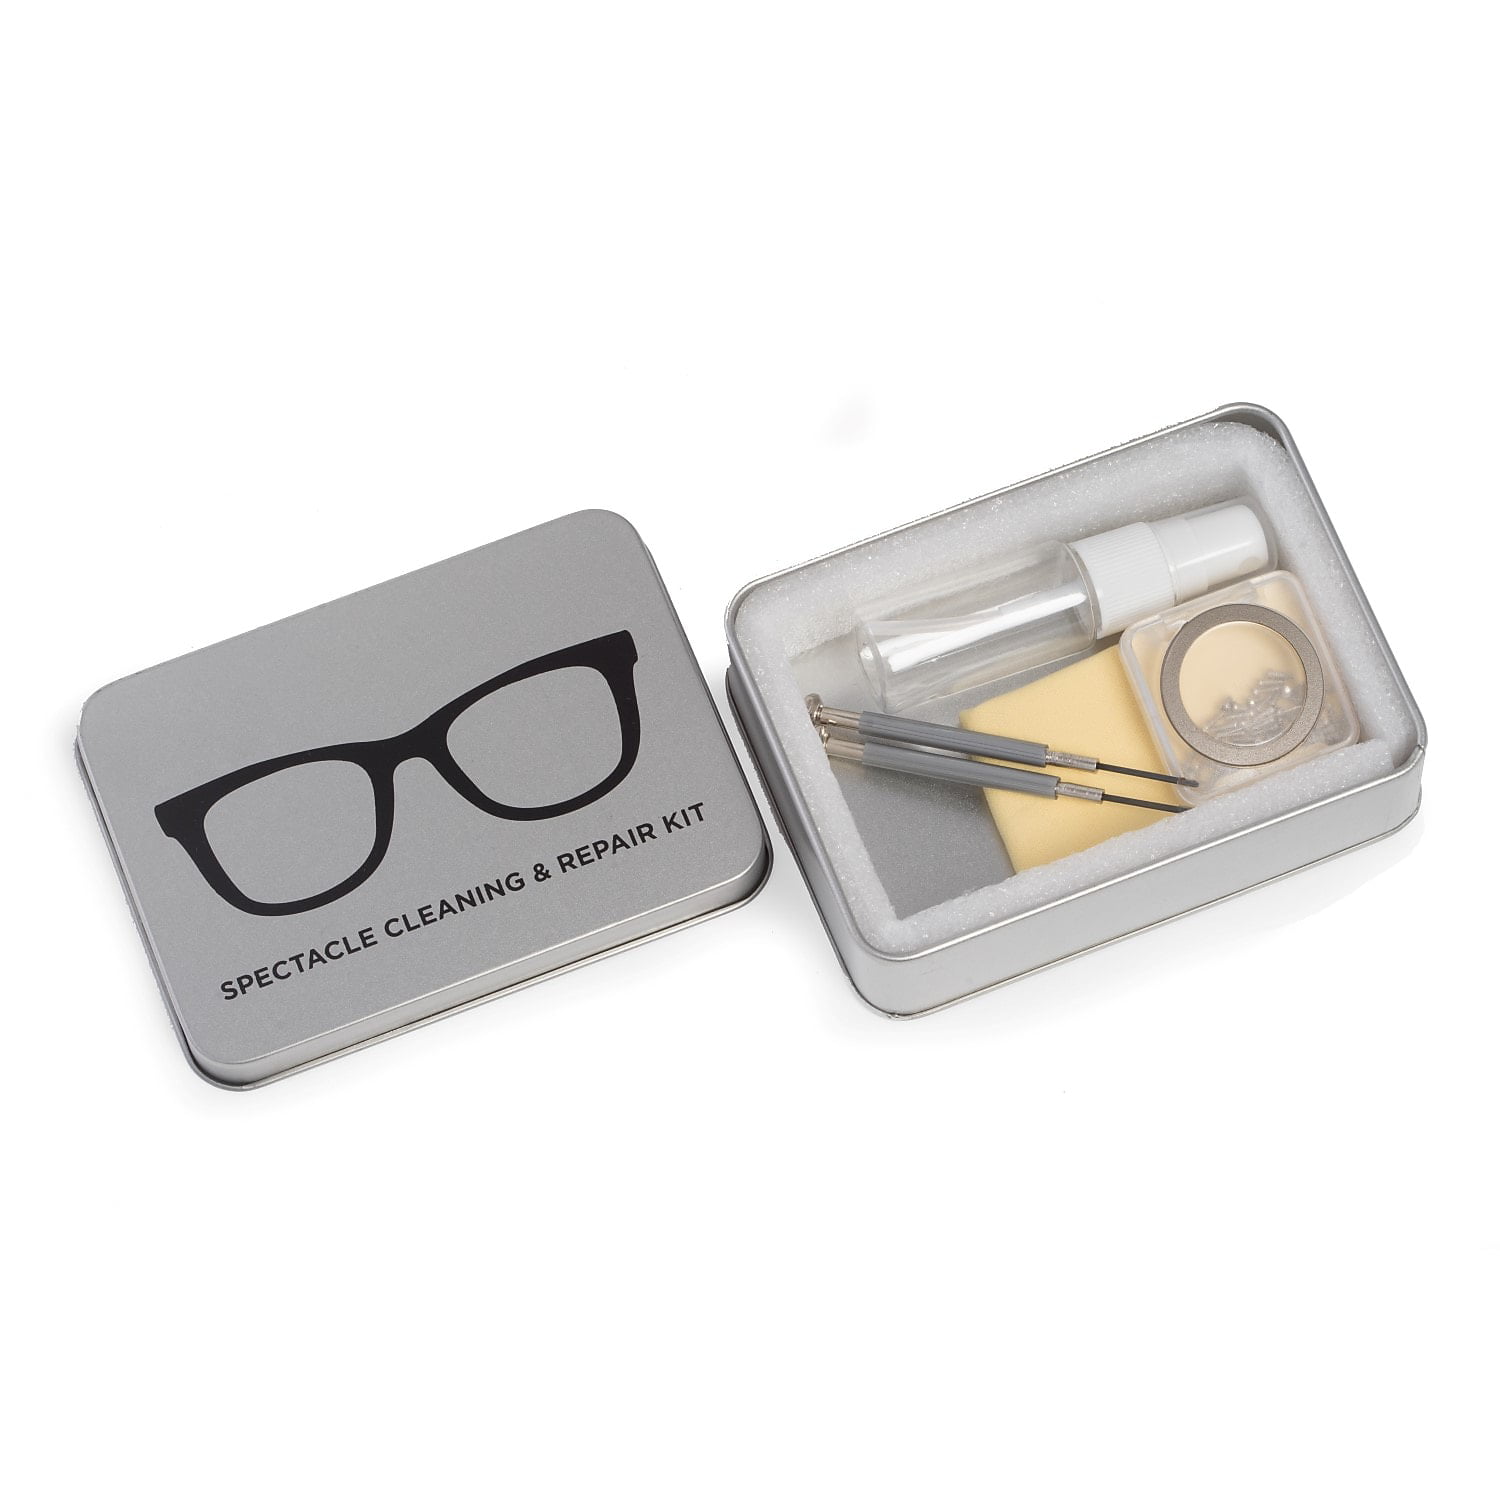 Bey-berk International Uc201 Eye Glass Cleaning & Repair Kit In Metal Case, Silver - 60 Piece